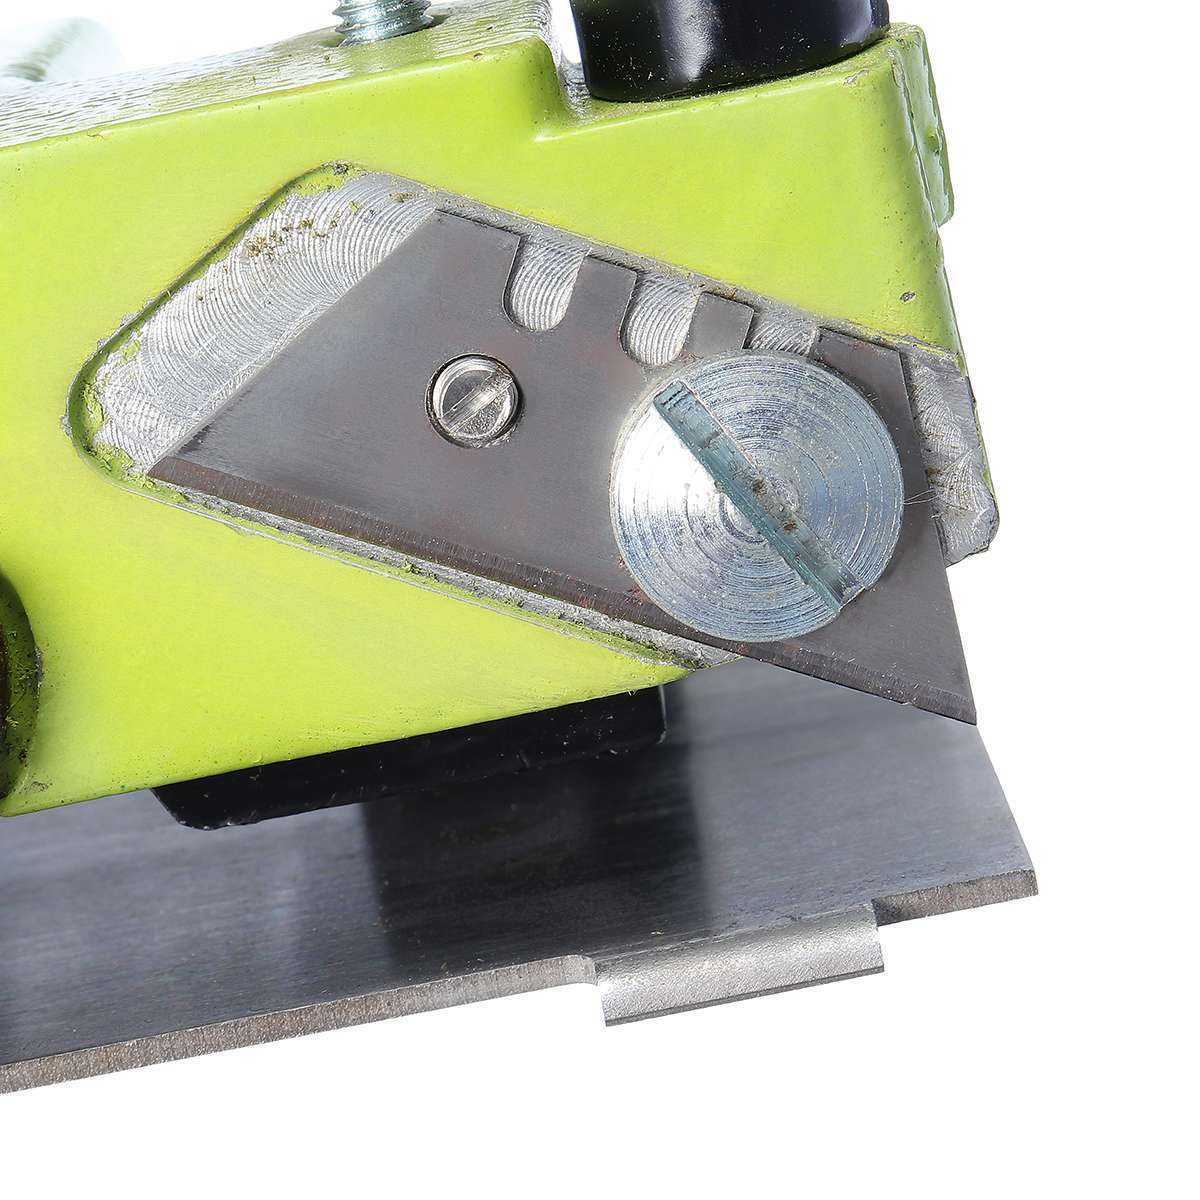 Оснастка для агрегатов продольной резки и прямолинейные ножи для обреза кромки - сменное оборудование - продукция